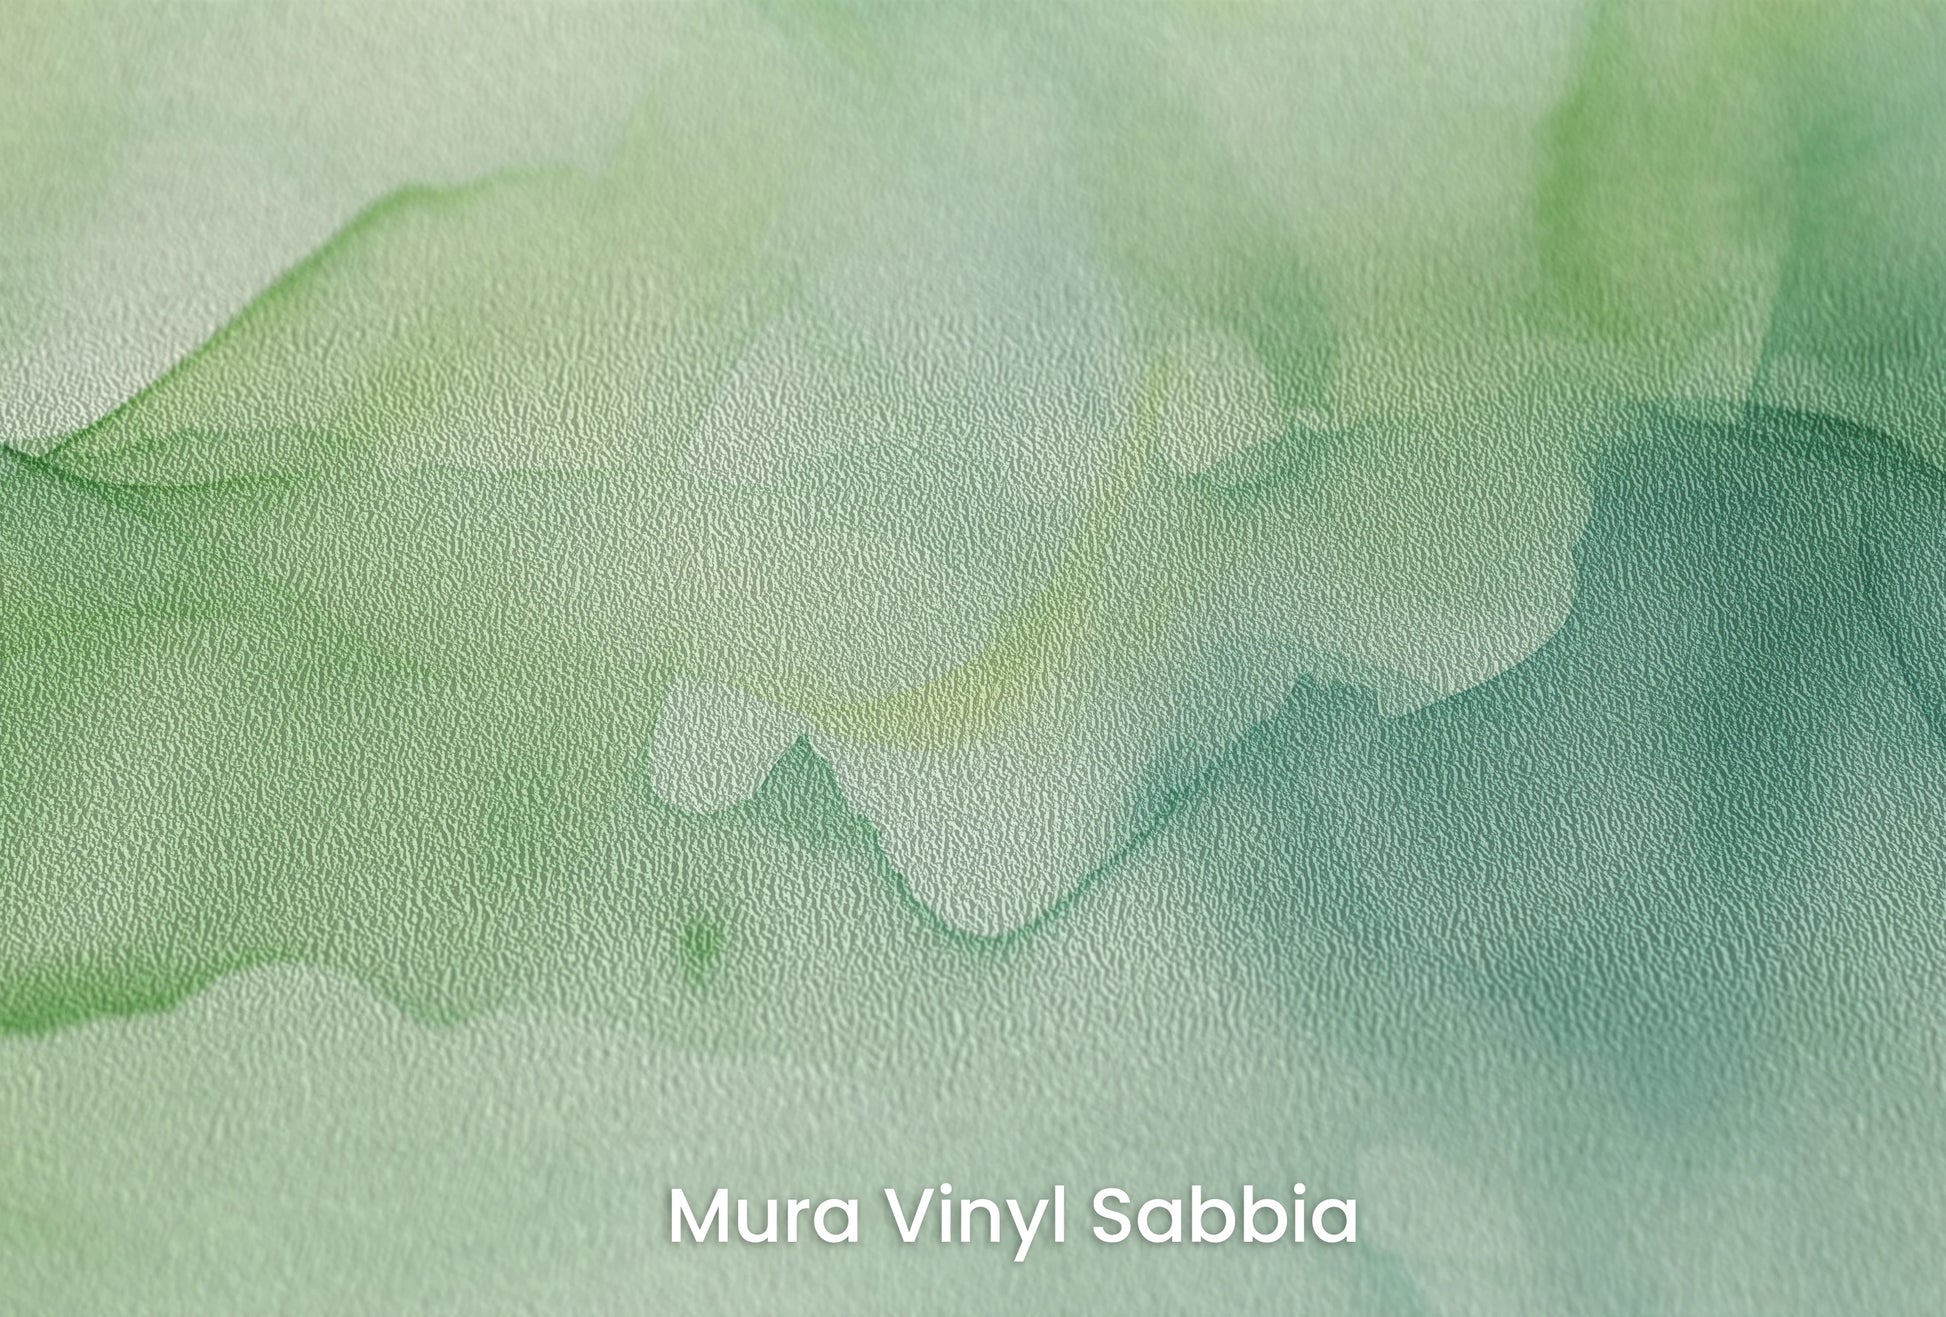 Zbliżenie na artystyczną fototapetę o nazwie Eteryczna Zieleń na podłożu Mura Vinyl Sabbia struktura grubego ziarna piasku.